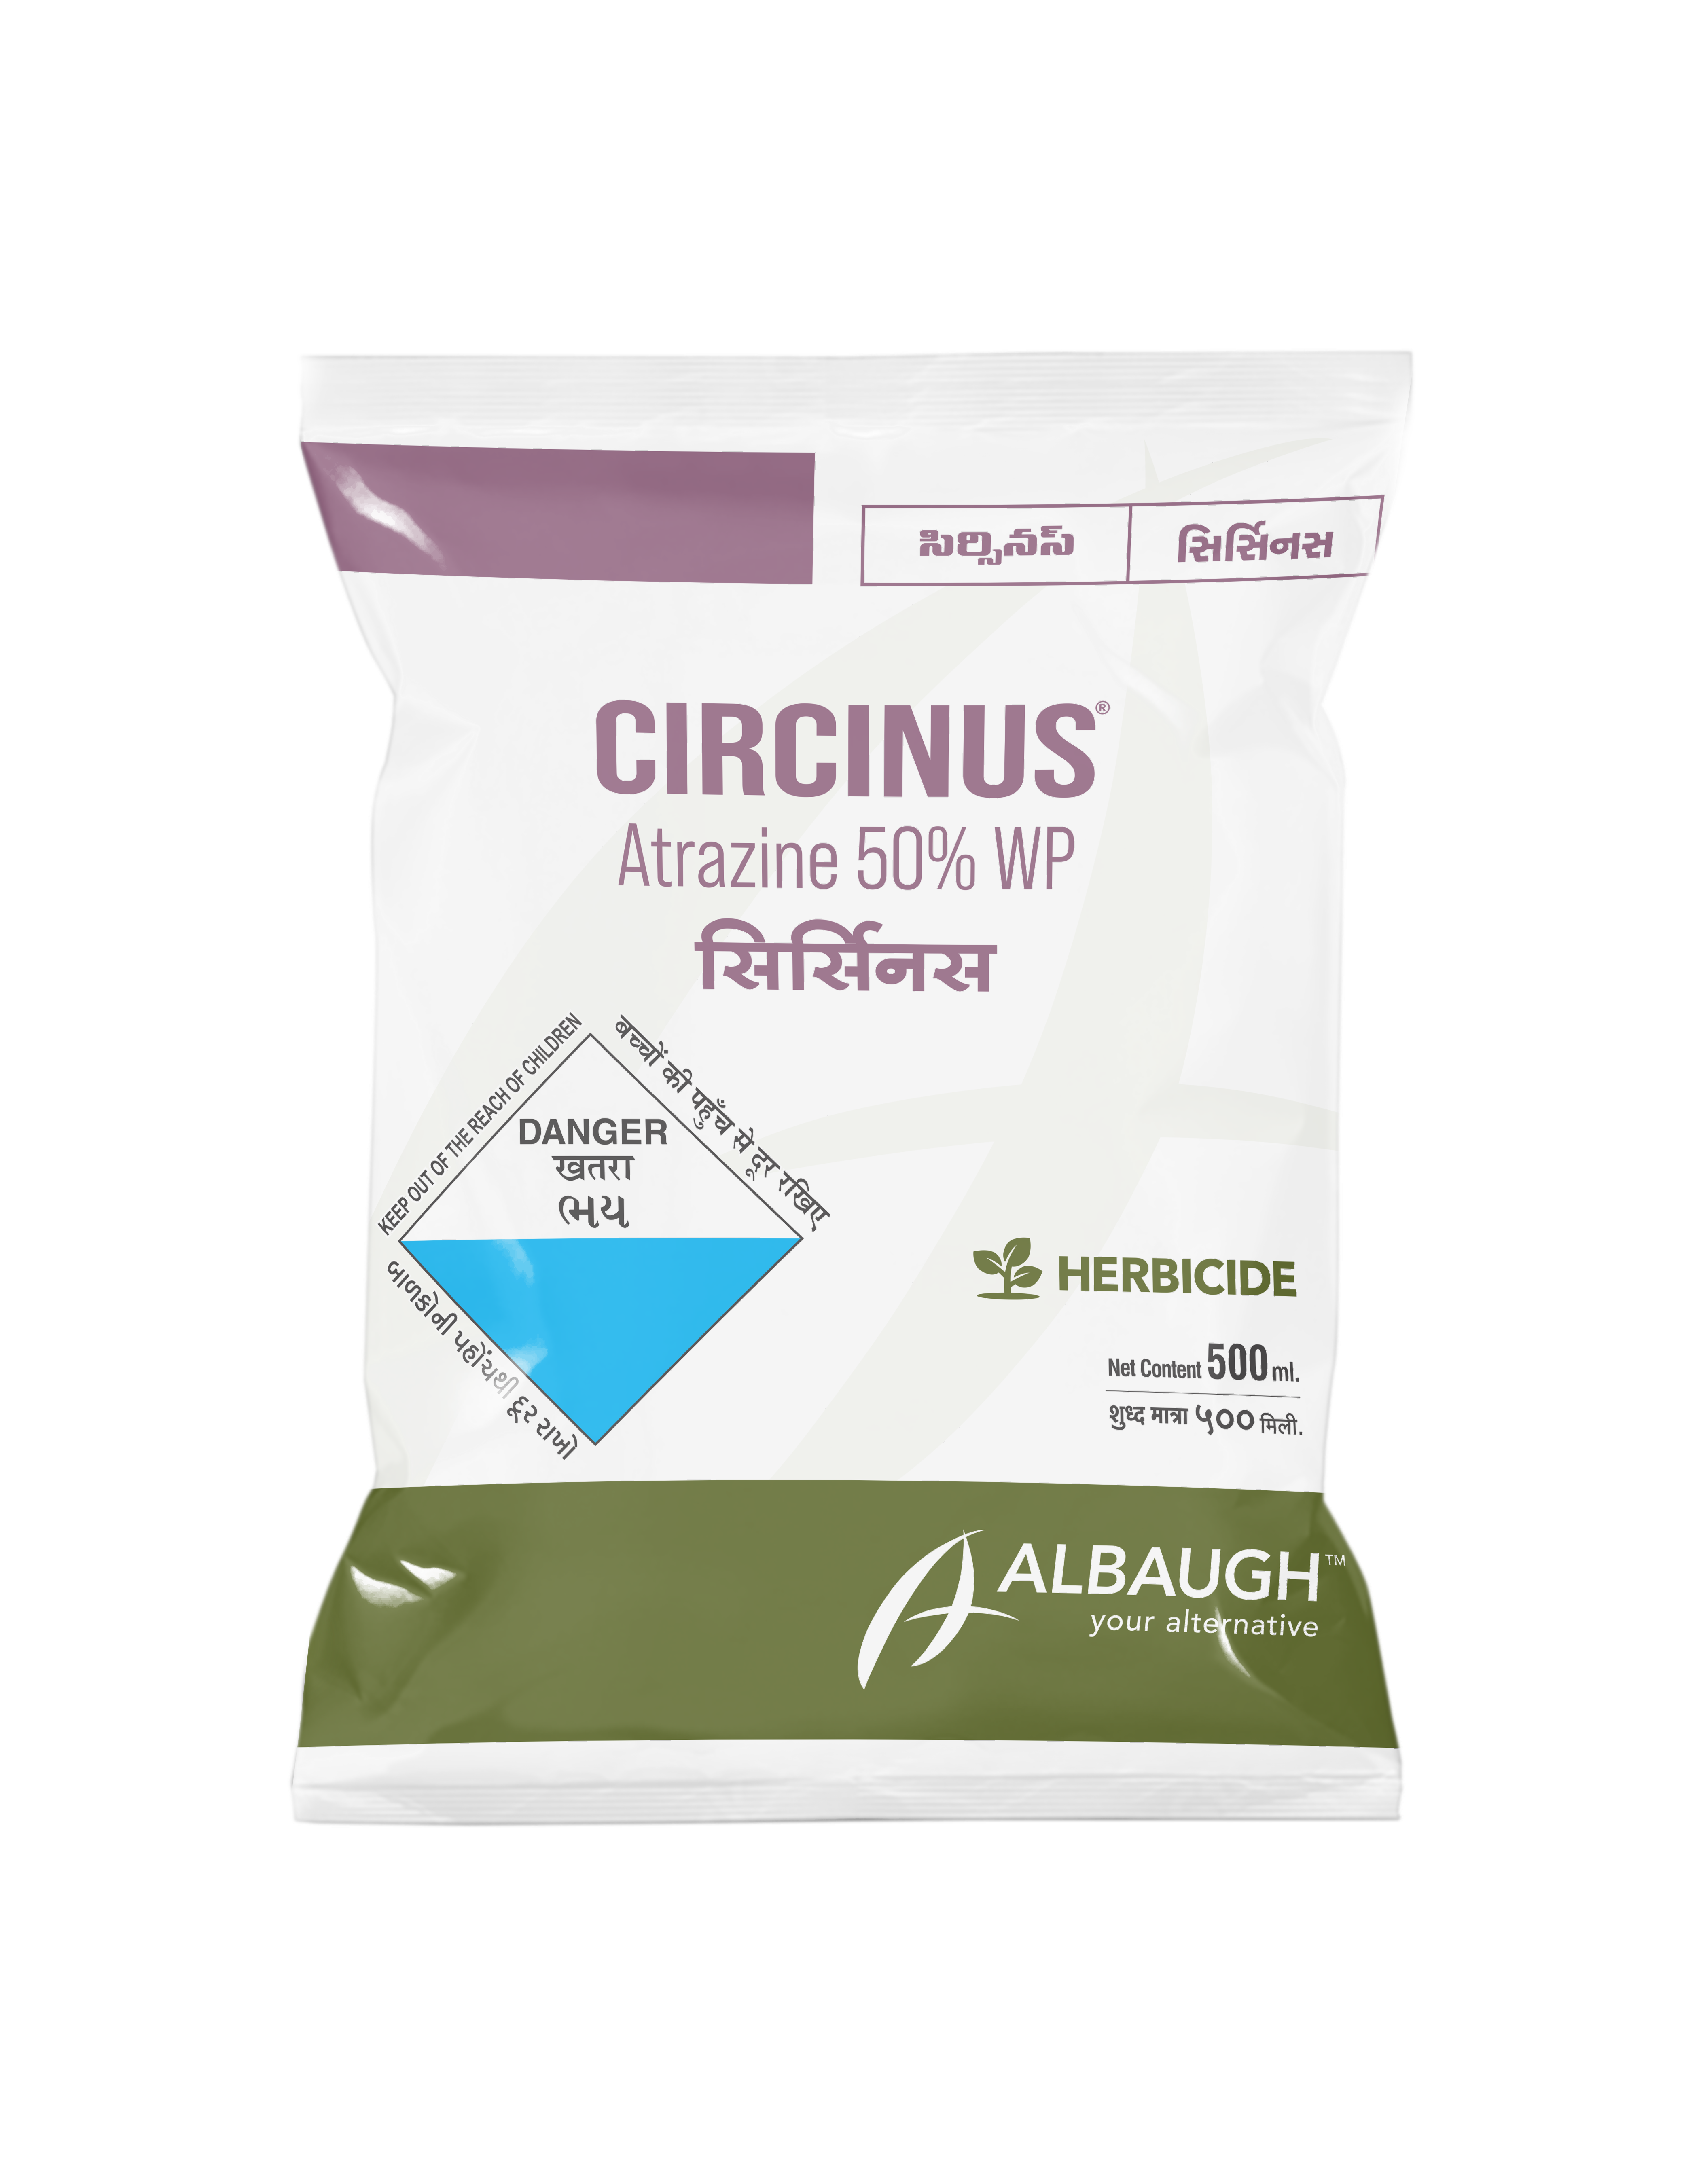 Circinus: Atrazine 50% WP